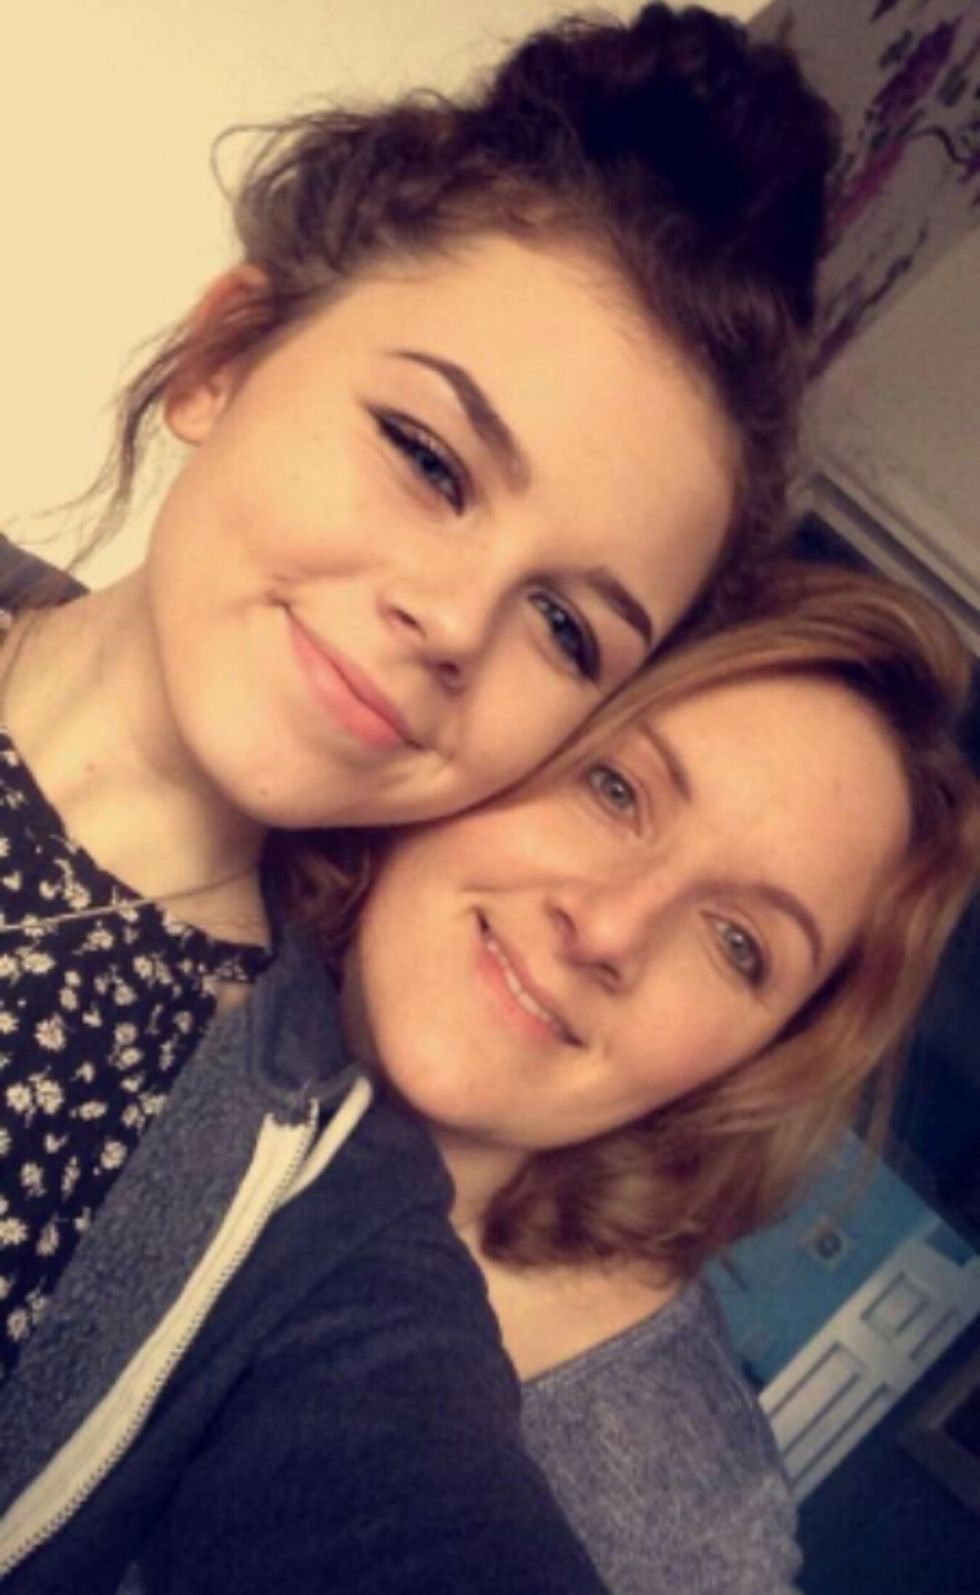 Toxic Shock Syndrome Nearly Kills Teen - Molly Pawlett Hospitalized for TSS